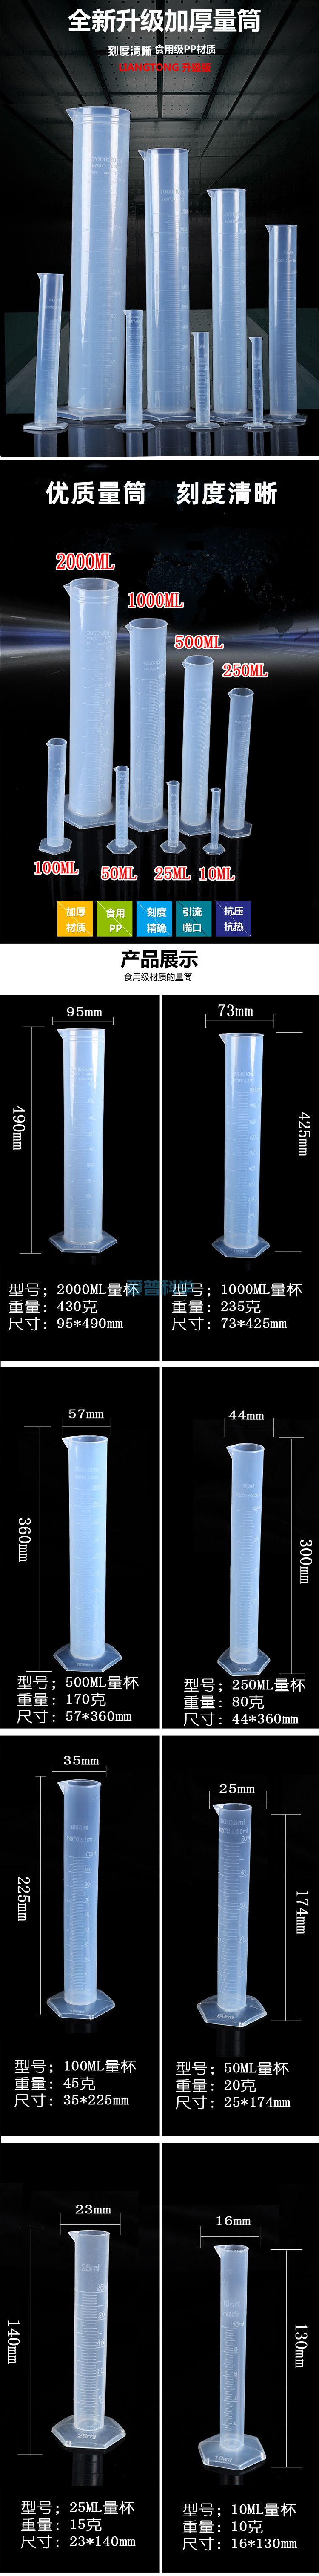 10ml六角塑料量筒,PP,耐高温防腐蚀(图1)